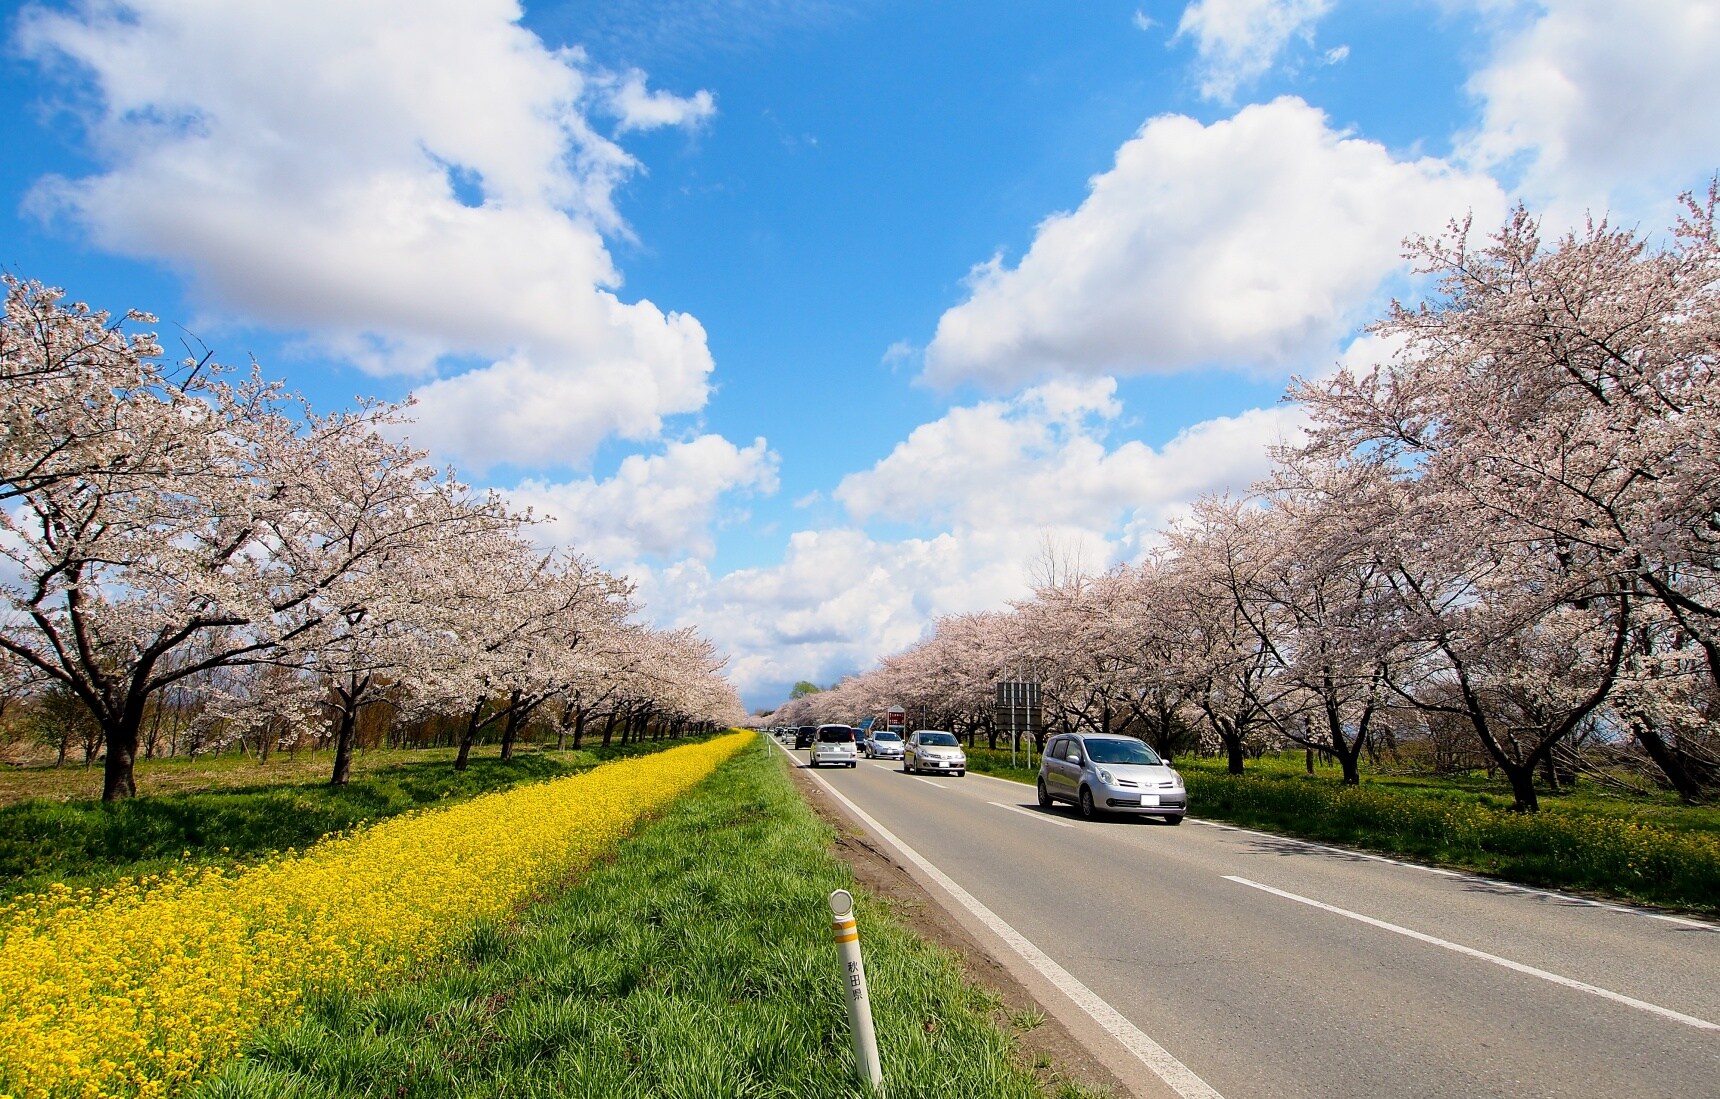 专享好景好物的春游之旅 | 写给初次造访日本东北的你